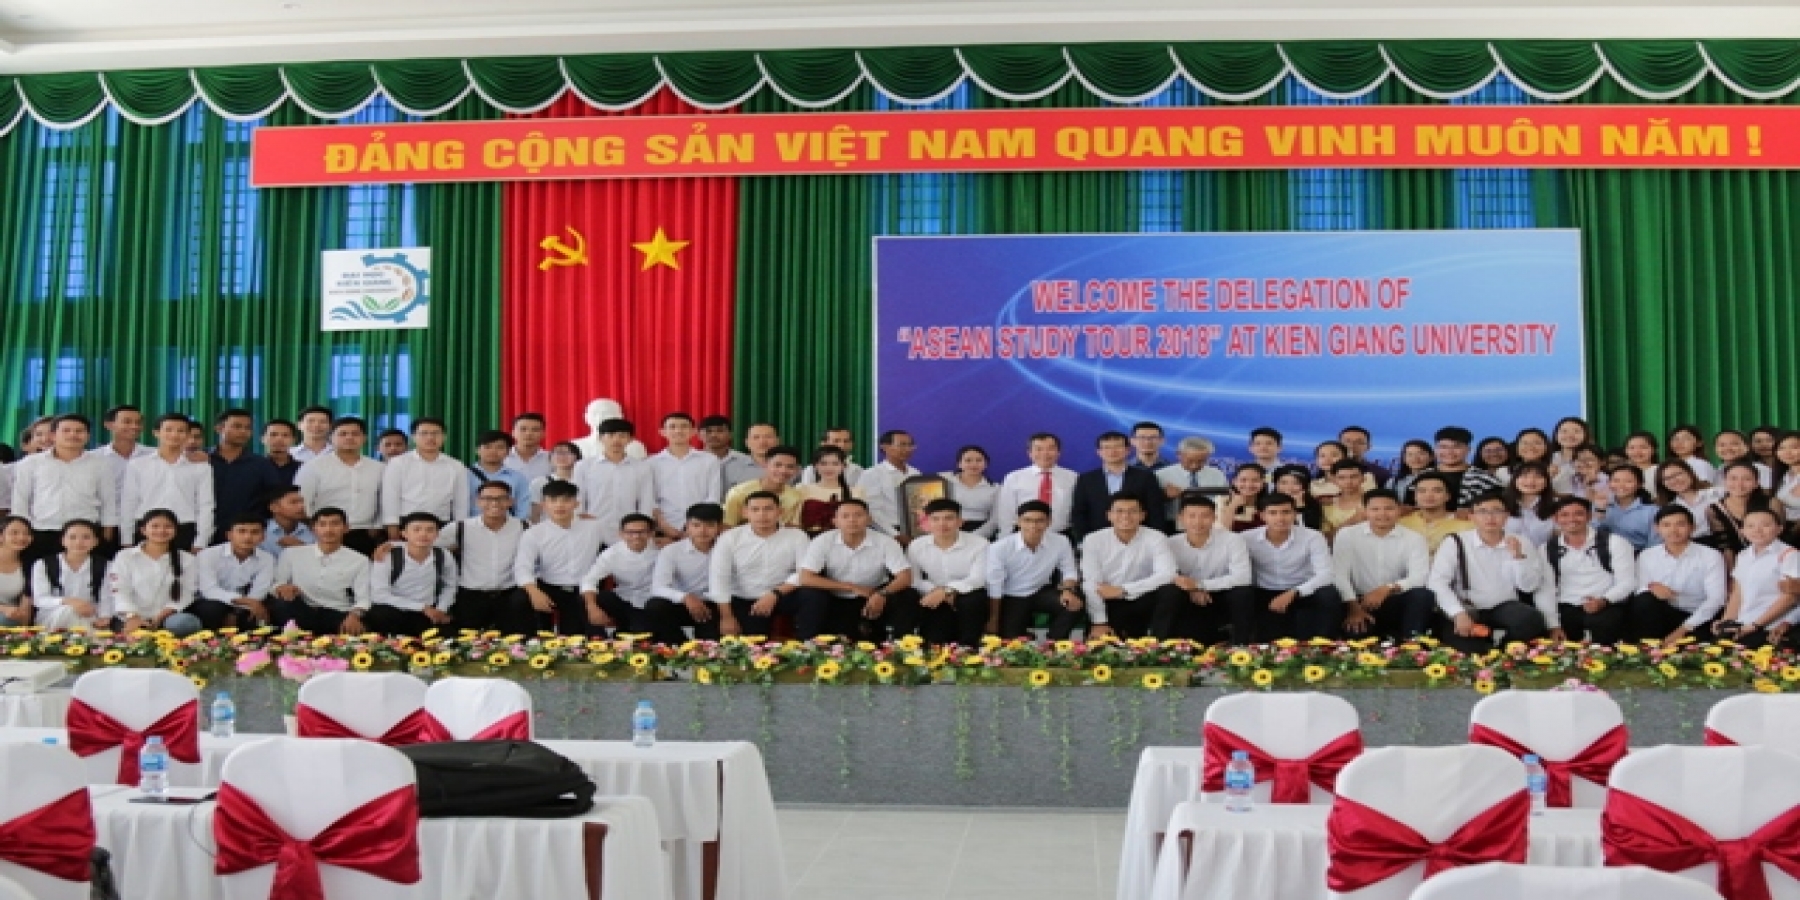  Tiếp đoàn cán bộ, giảng viên và sinh viên Trường Đại học Hoàng Gia Phnôm Pênh đến giao lưu ngoại giao “ASEAN Study Tour”